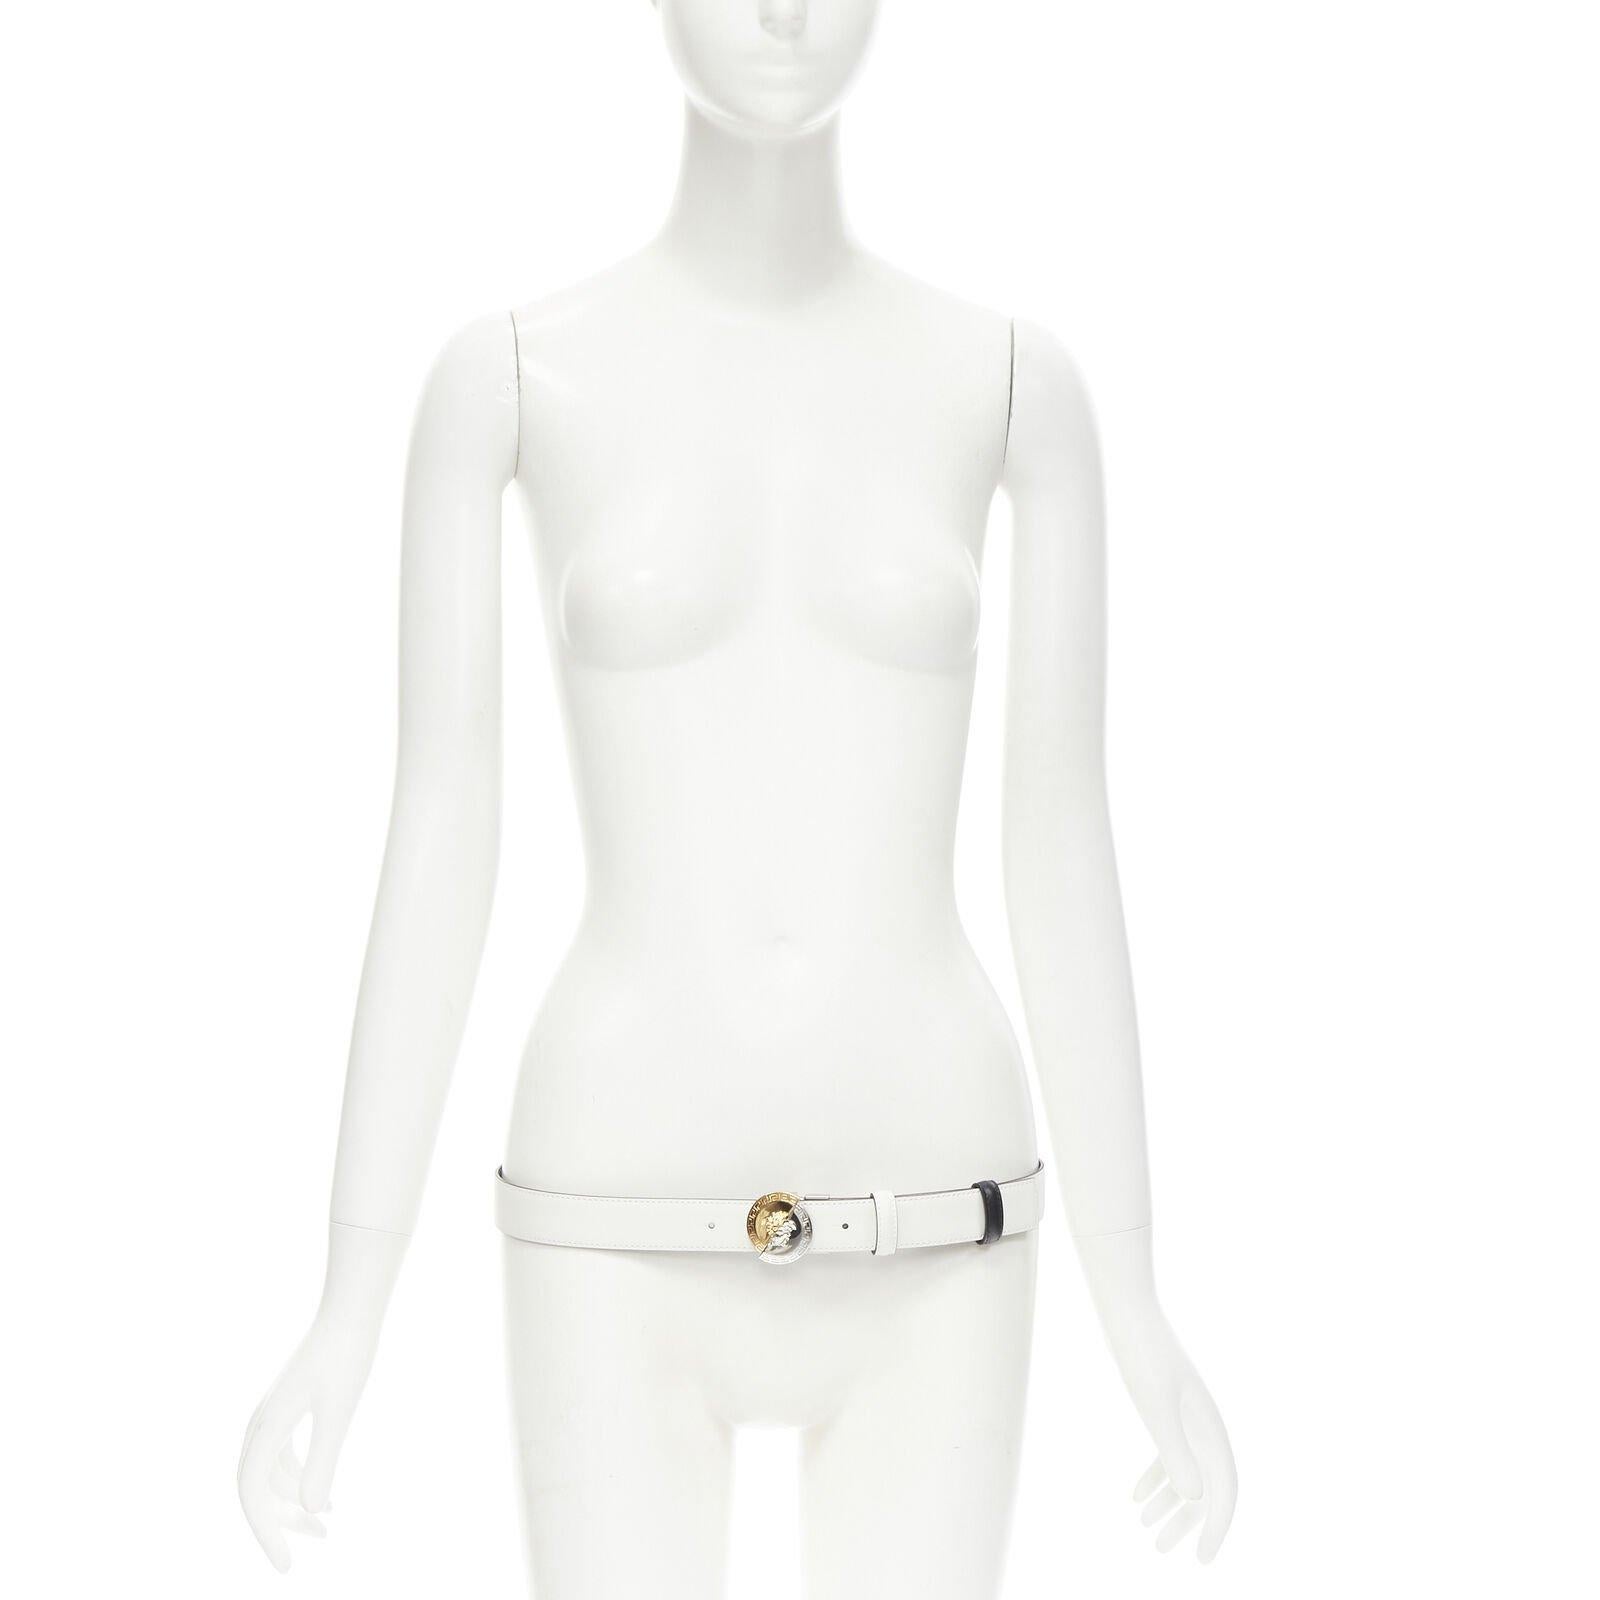 VERSACE Versace Medusa Réversible noir blanc boucle fendue ceinture 100cm 38-42